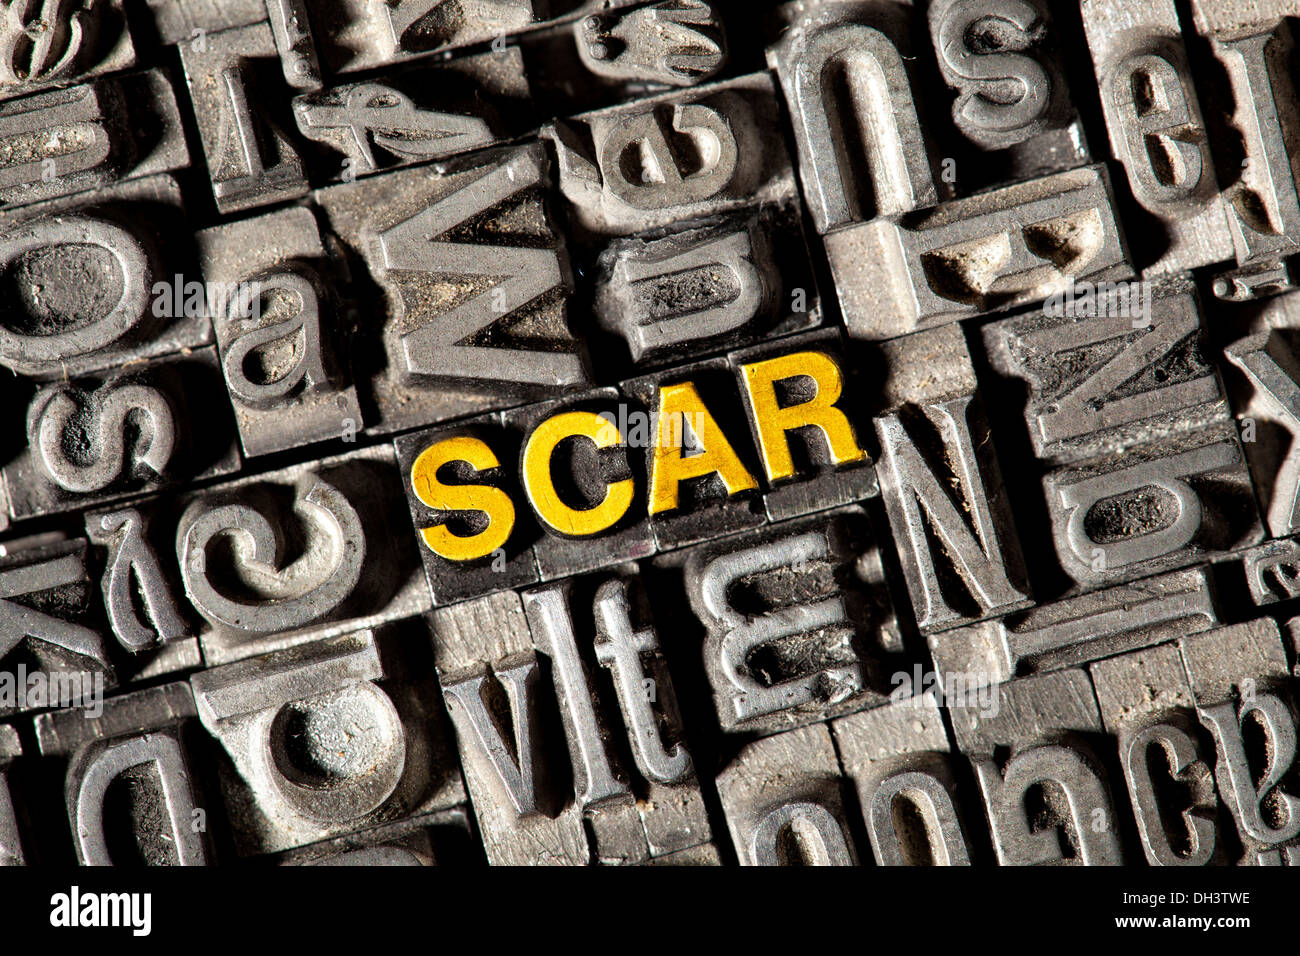 Alten Blei-Buchstaben bilden das Wort "SCAR Stockfotografie - Alamy